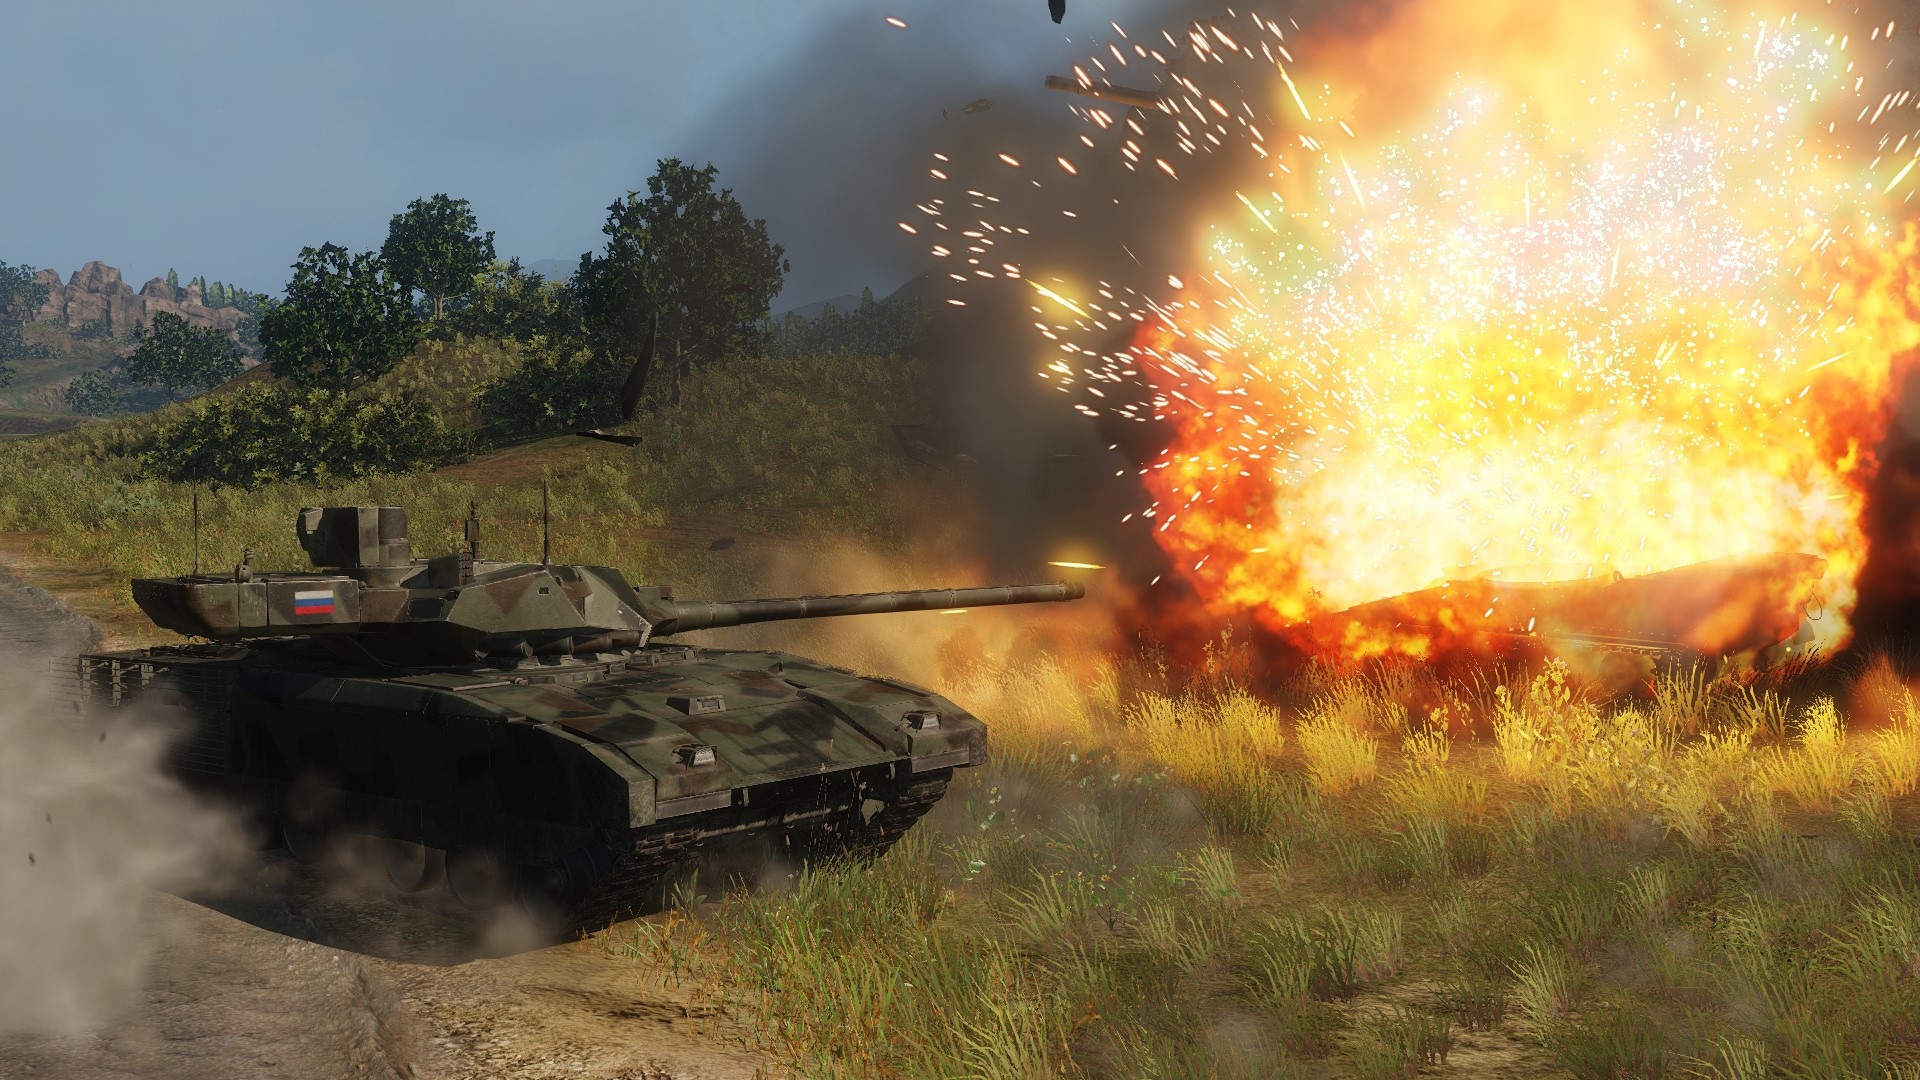 Beste tankwedstrijden: gepantserde oorlogvoering. Afbeelding toont een tank die zijn grote pistool afvuurt